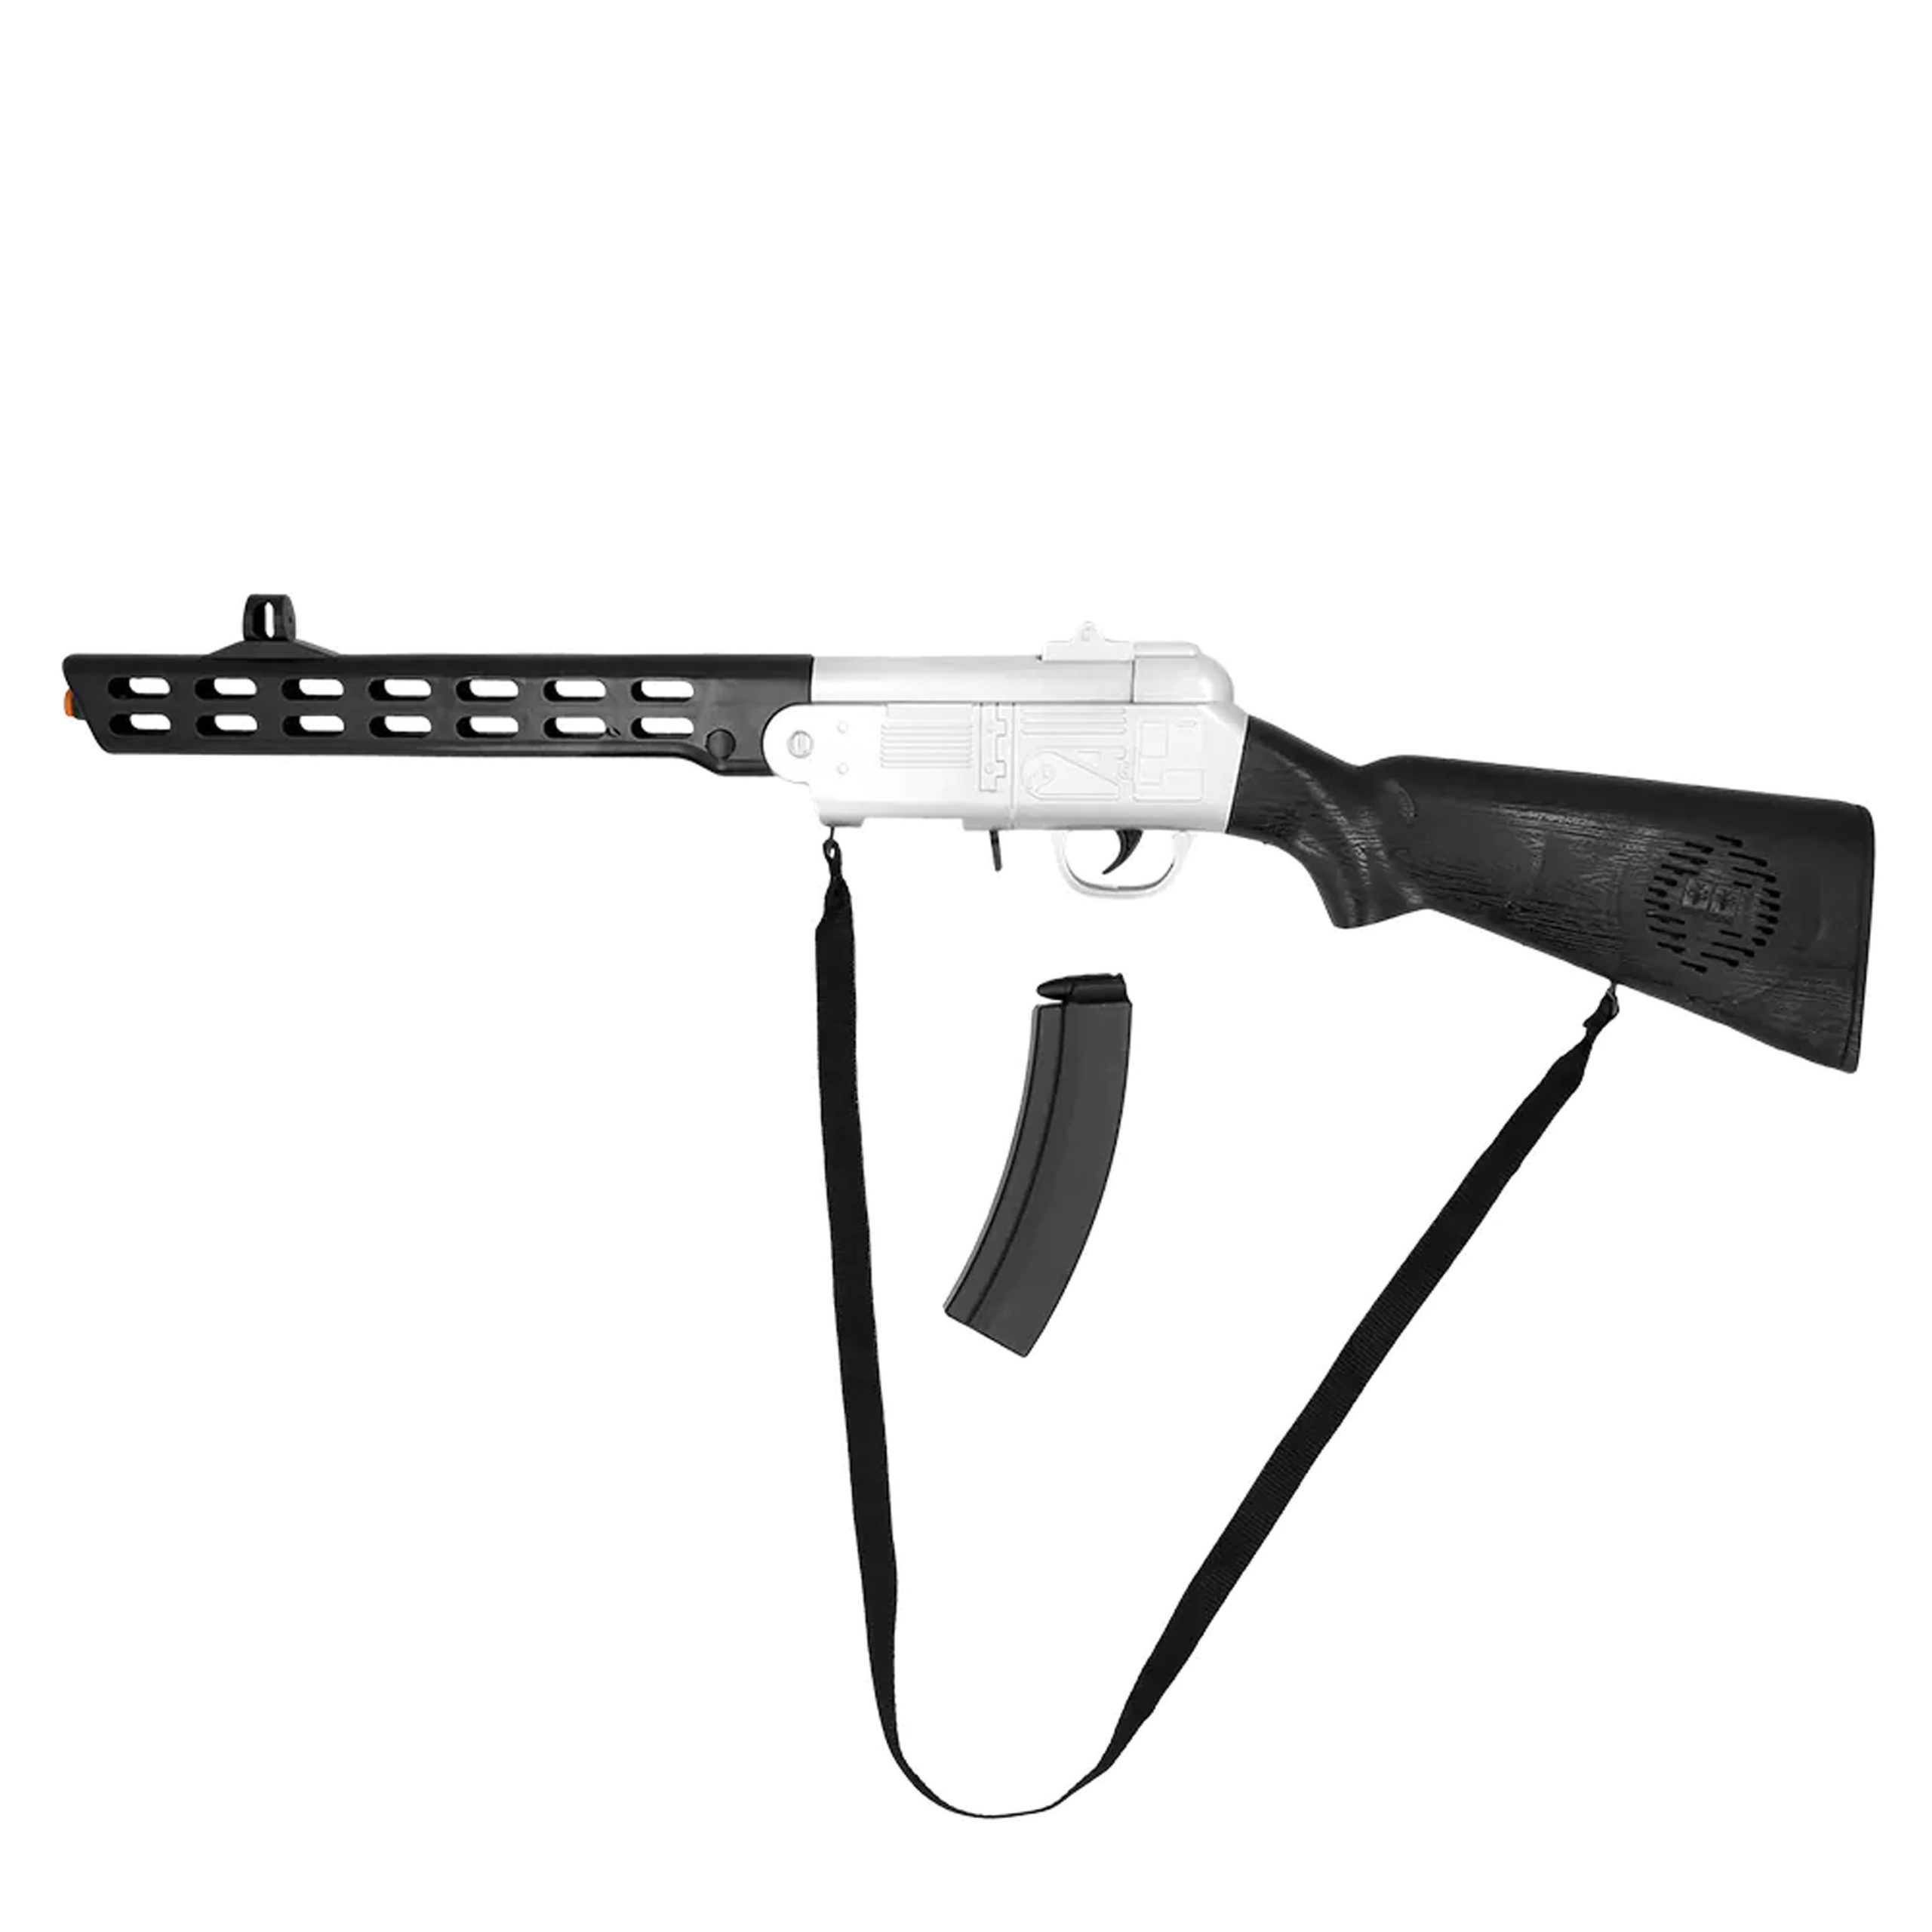 Boland Verkleed speelgoed Politie/soldaten geweer - machinegeweer - zwart - plastic - 67 cm